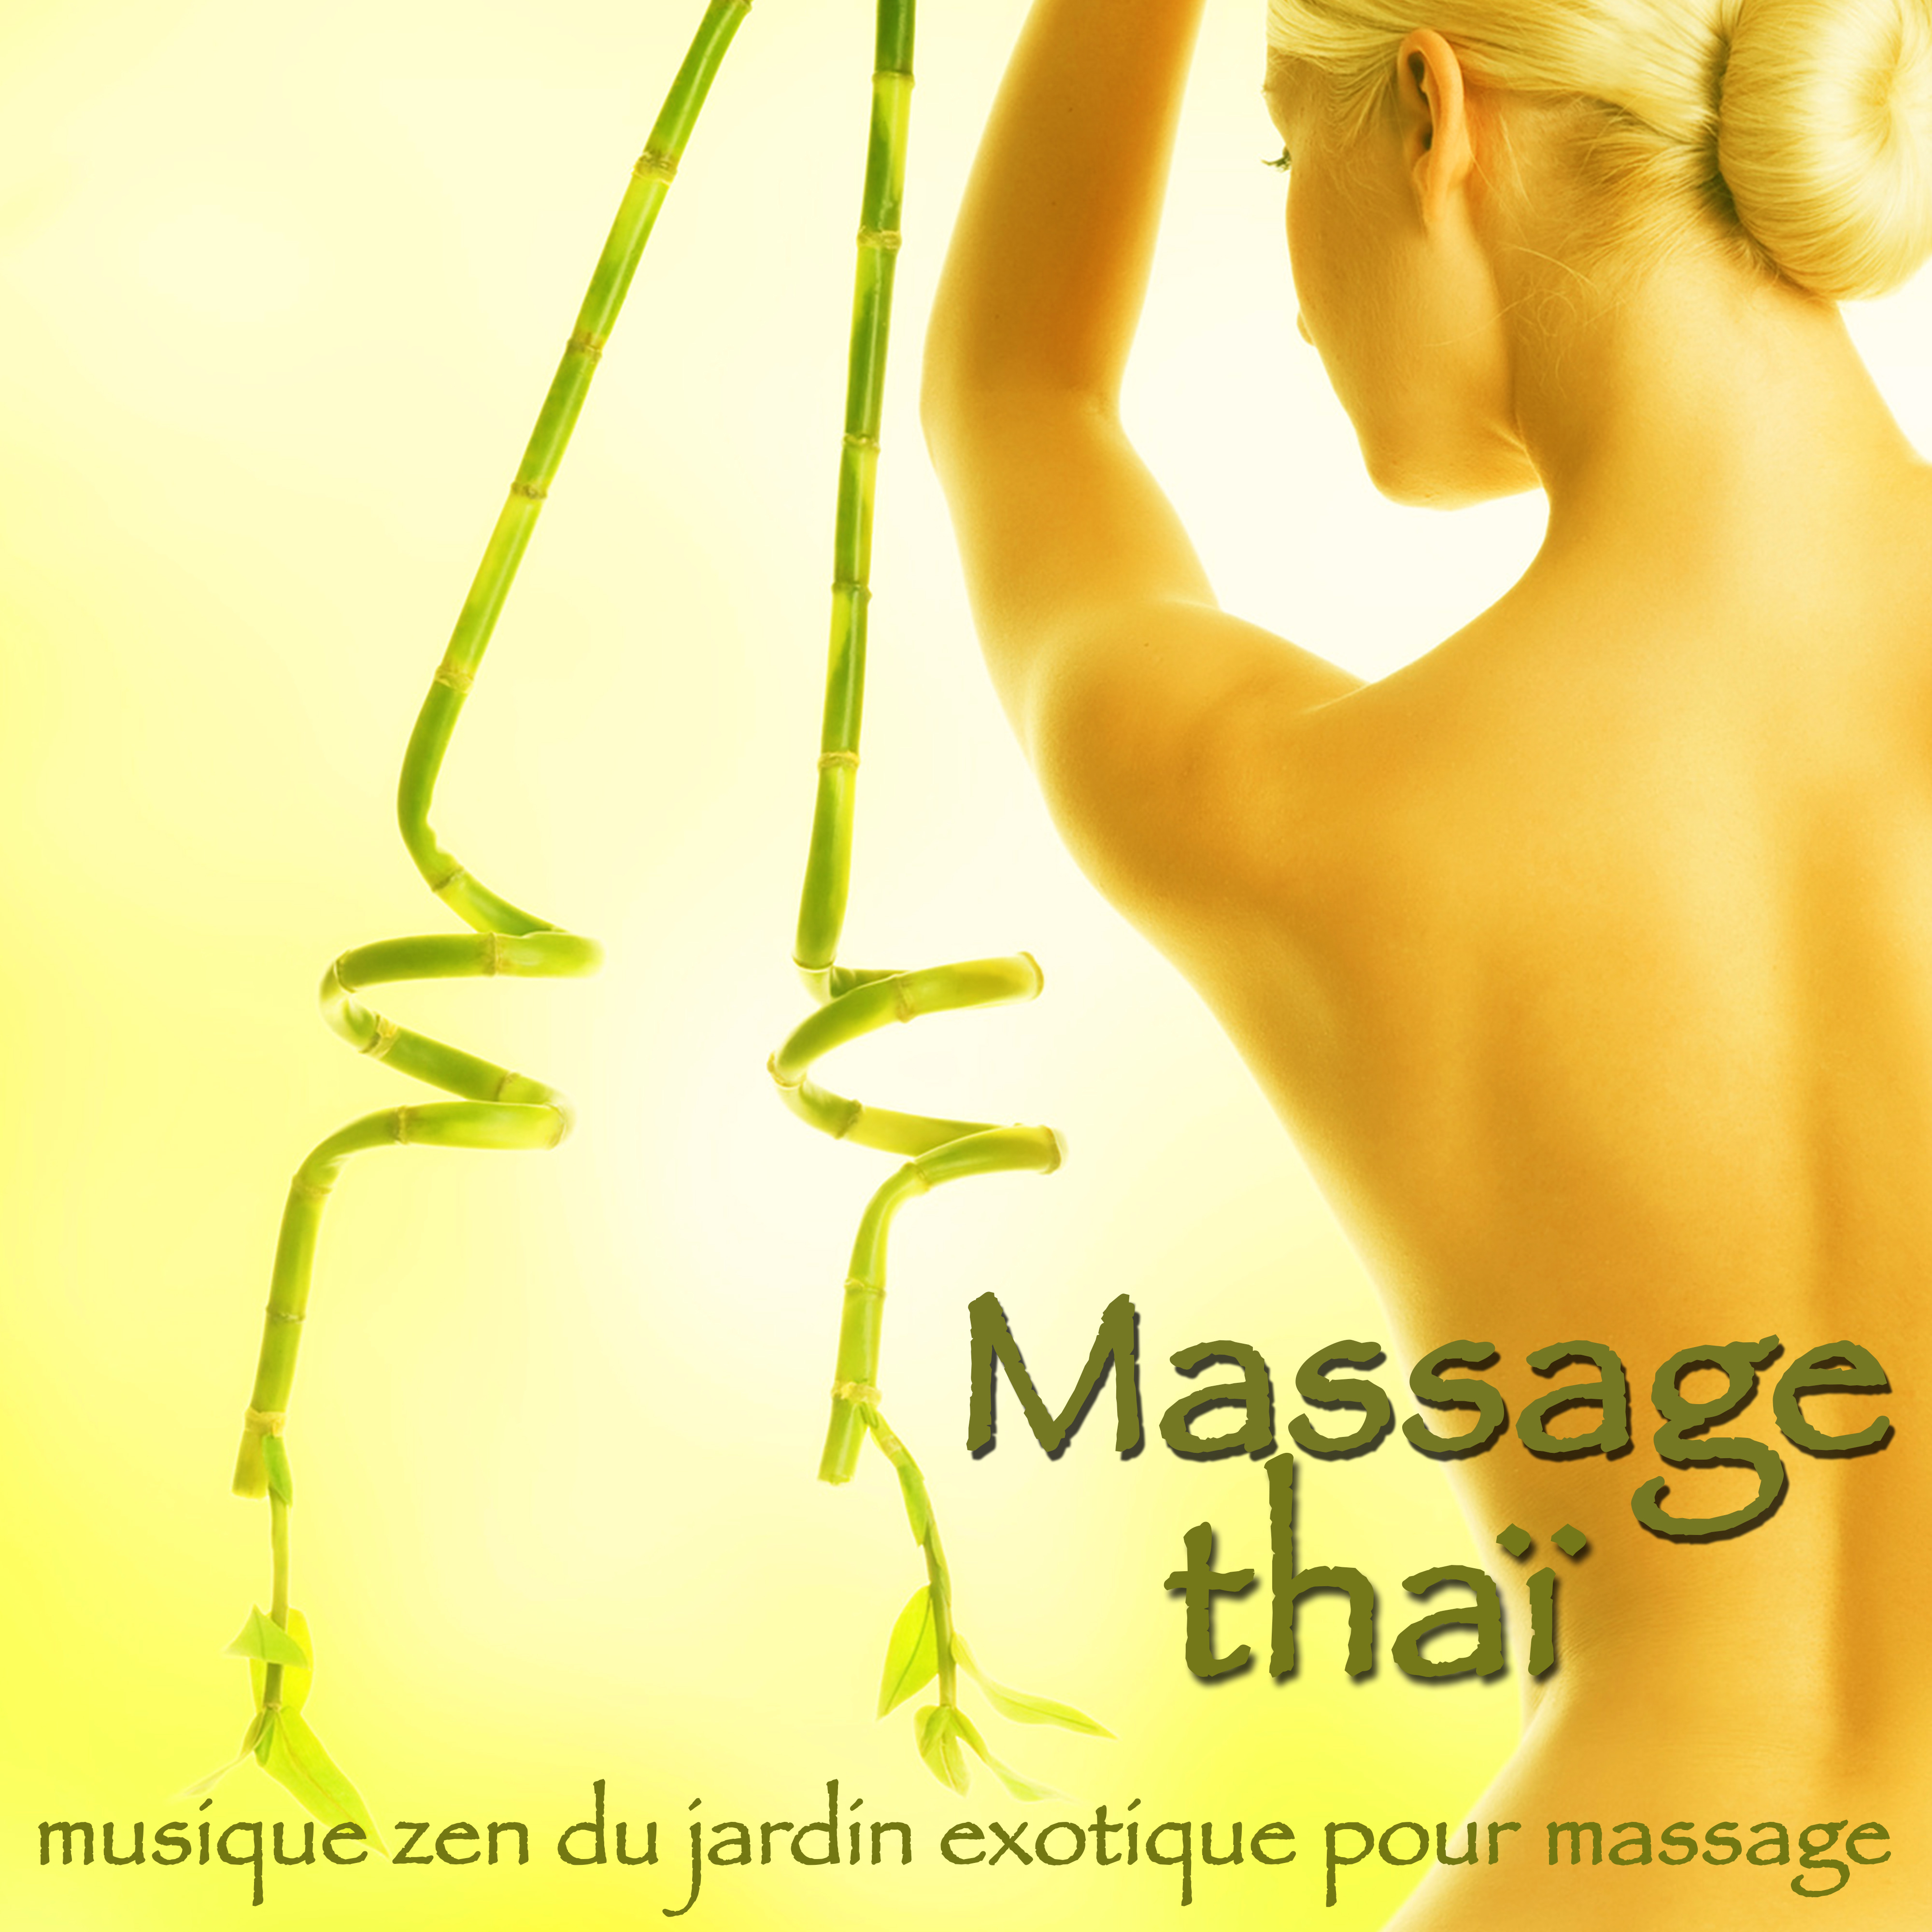 Massage tha  Musique zen du jardin exotique pour massage, de tente, spa et wellness bien tre